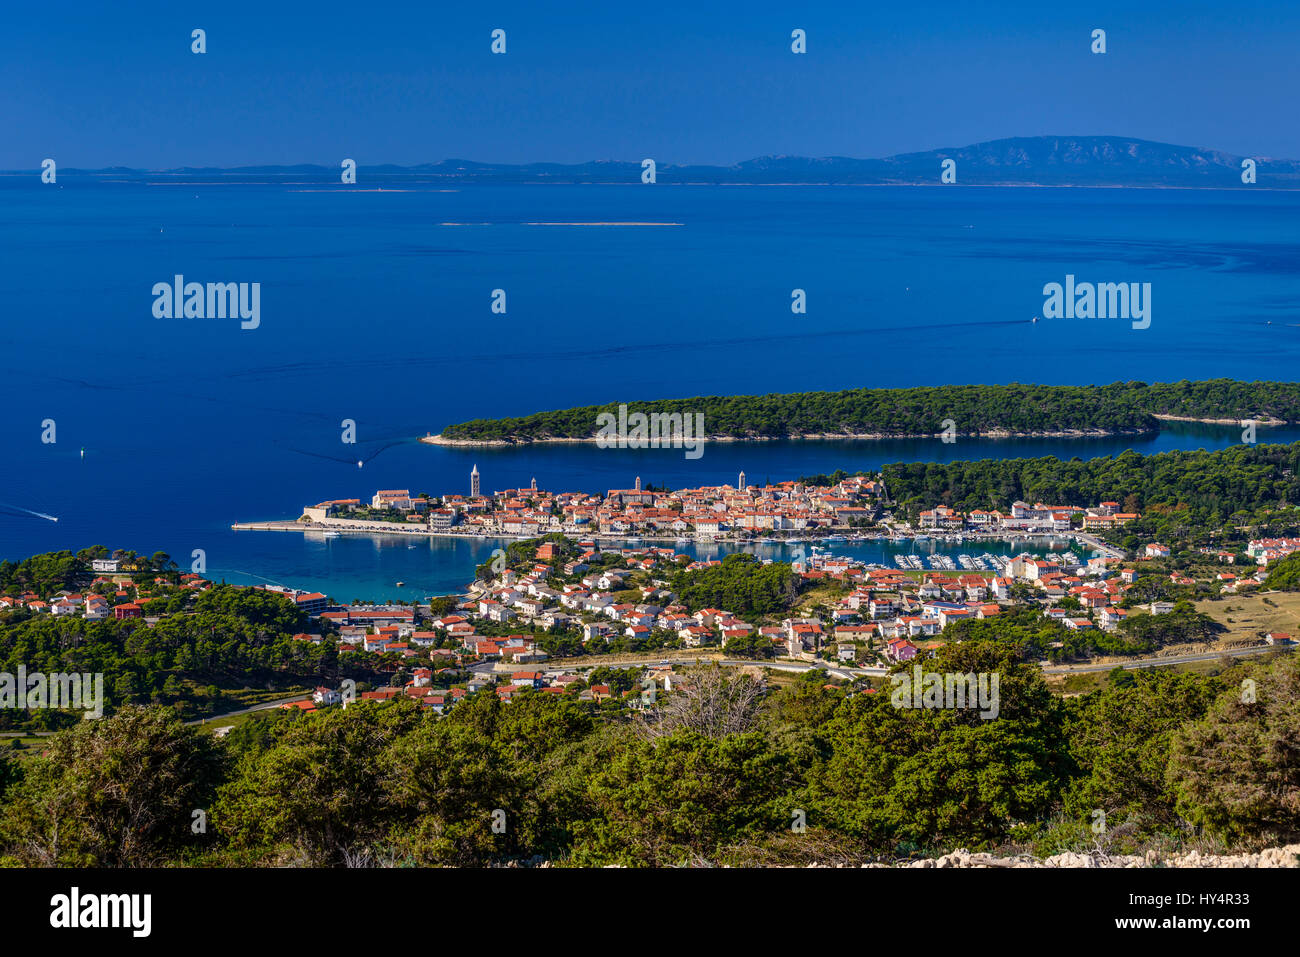 Croazia, golfo di Kvarner, Isola di Rab, Città di Rab, centro storico con il porto e la penisola Frkanj, amore isola, vista da Kamenjak Foto Stock